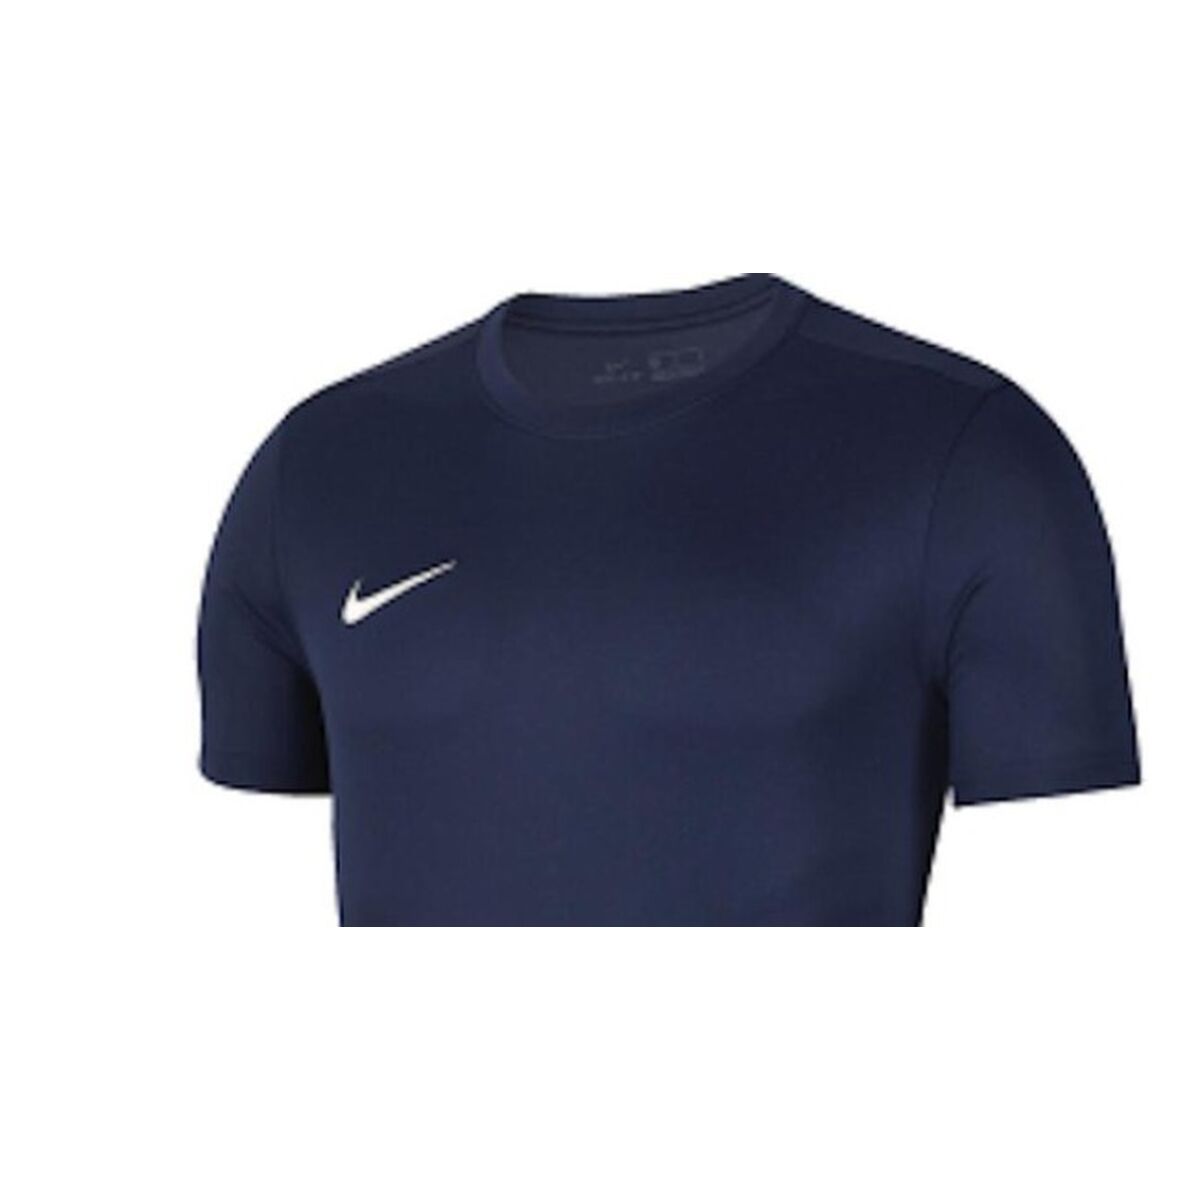 T-shirt à manches courtes enfant Nike Park VII BV6741 410 Blue marine